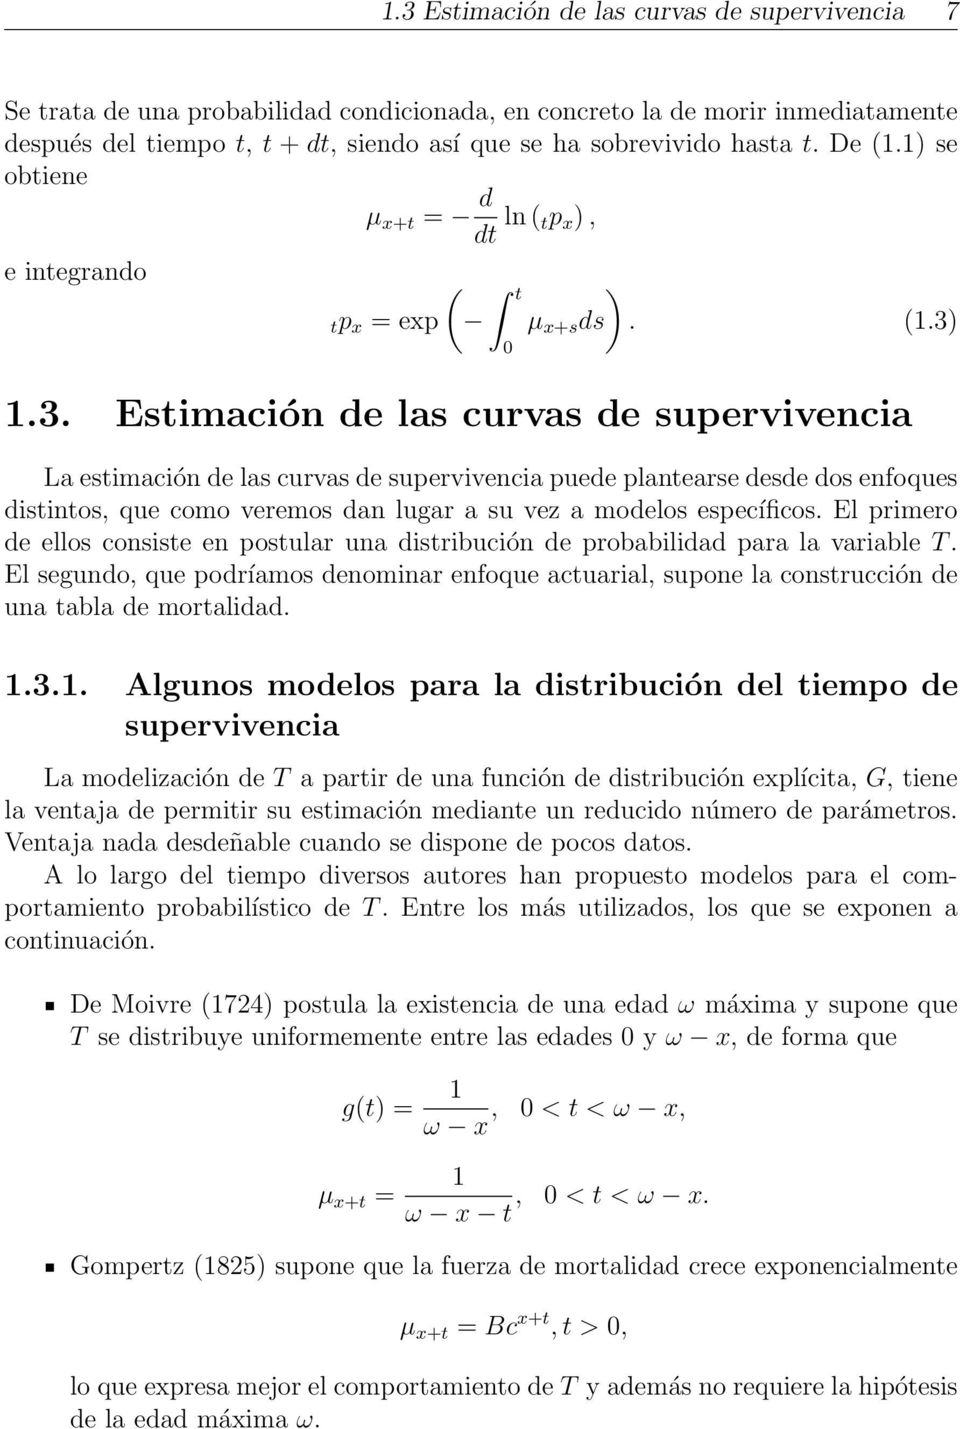 1.3. Estimación de las curvas de supervivencia La estimación de las curvas de supervivencia puede plantearse desde dos enfoques distintos, que como veremos dan lugar a su vez a modelos específicos.